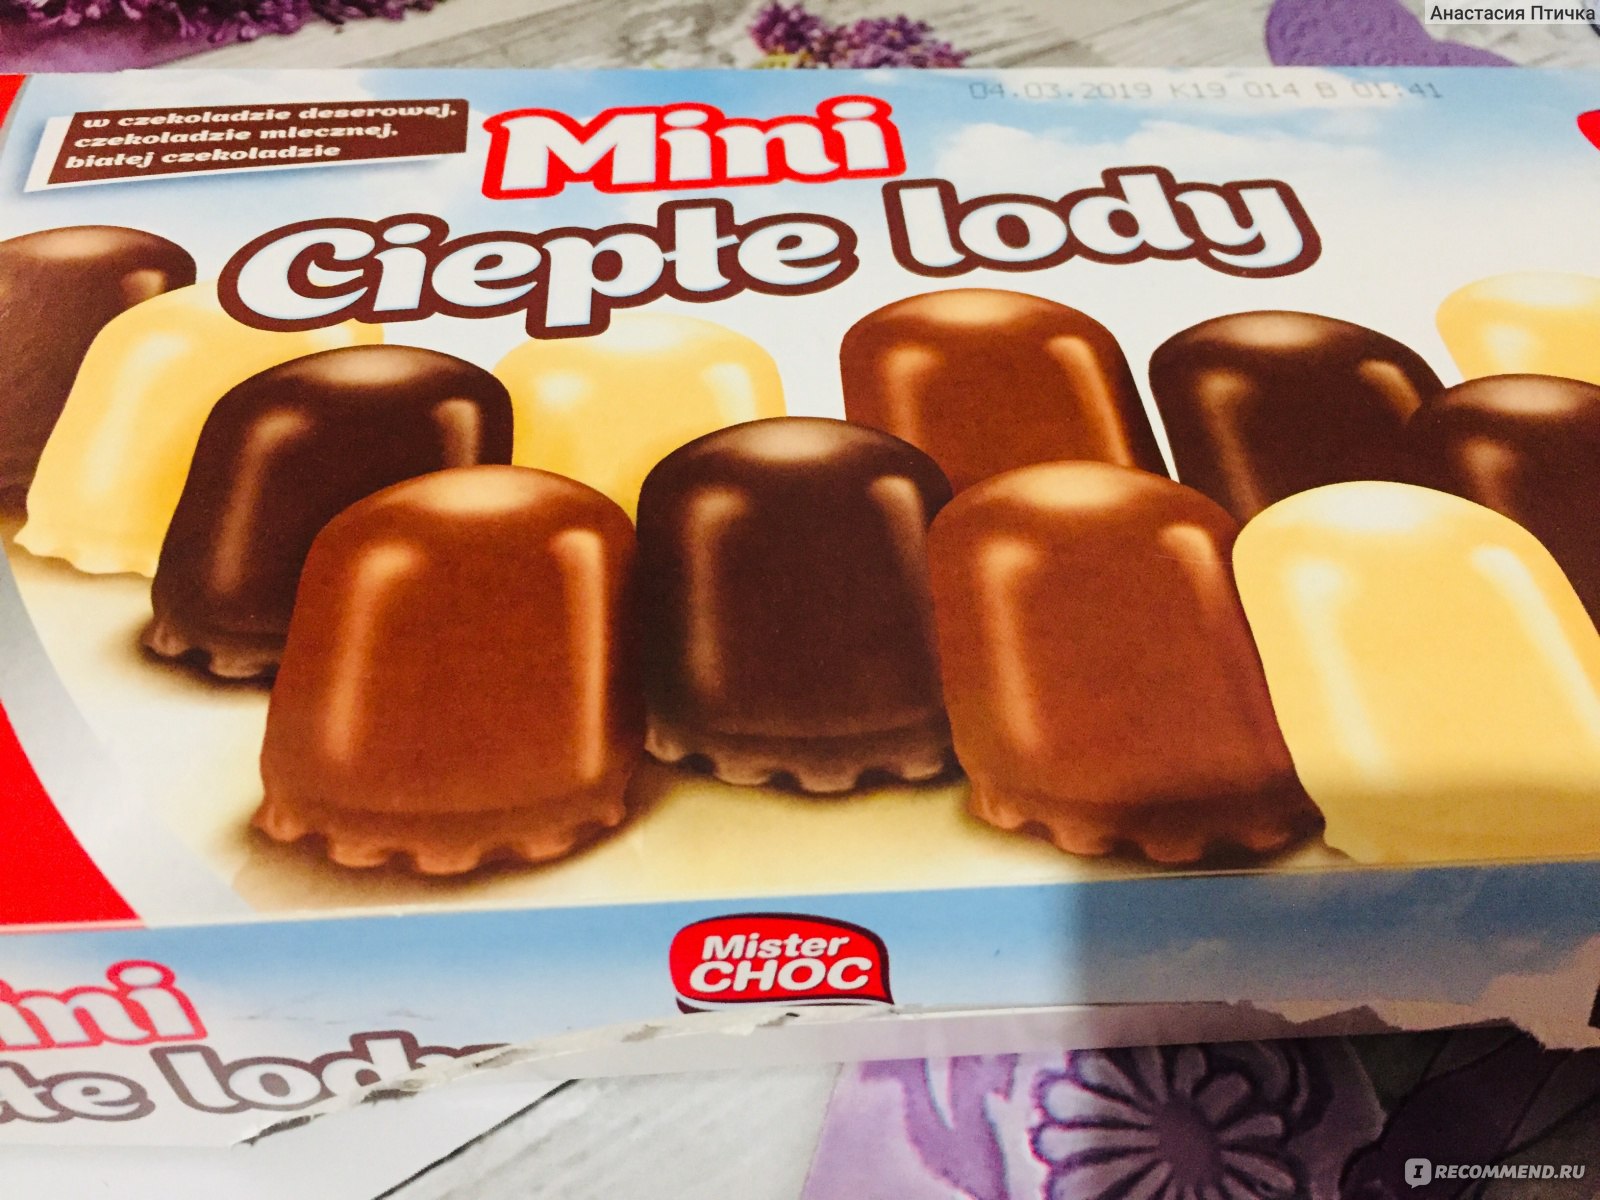 Суфле в шоколаде Mister Choc Ciepte Lody Mini фото